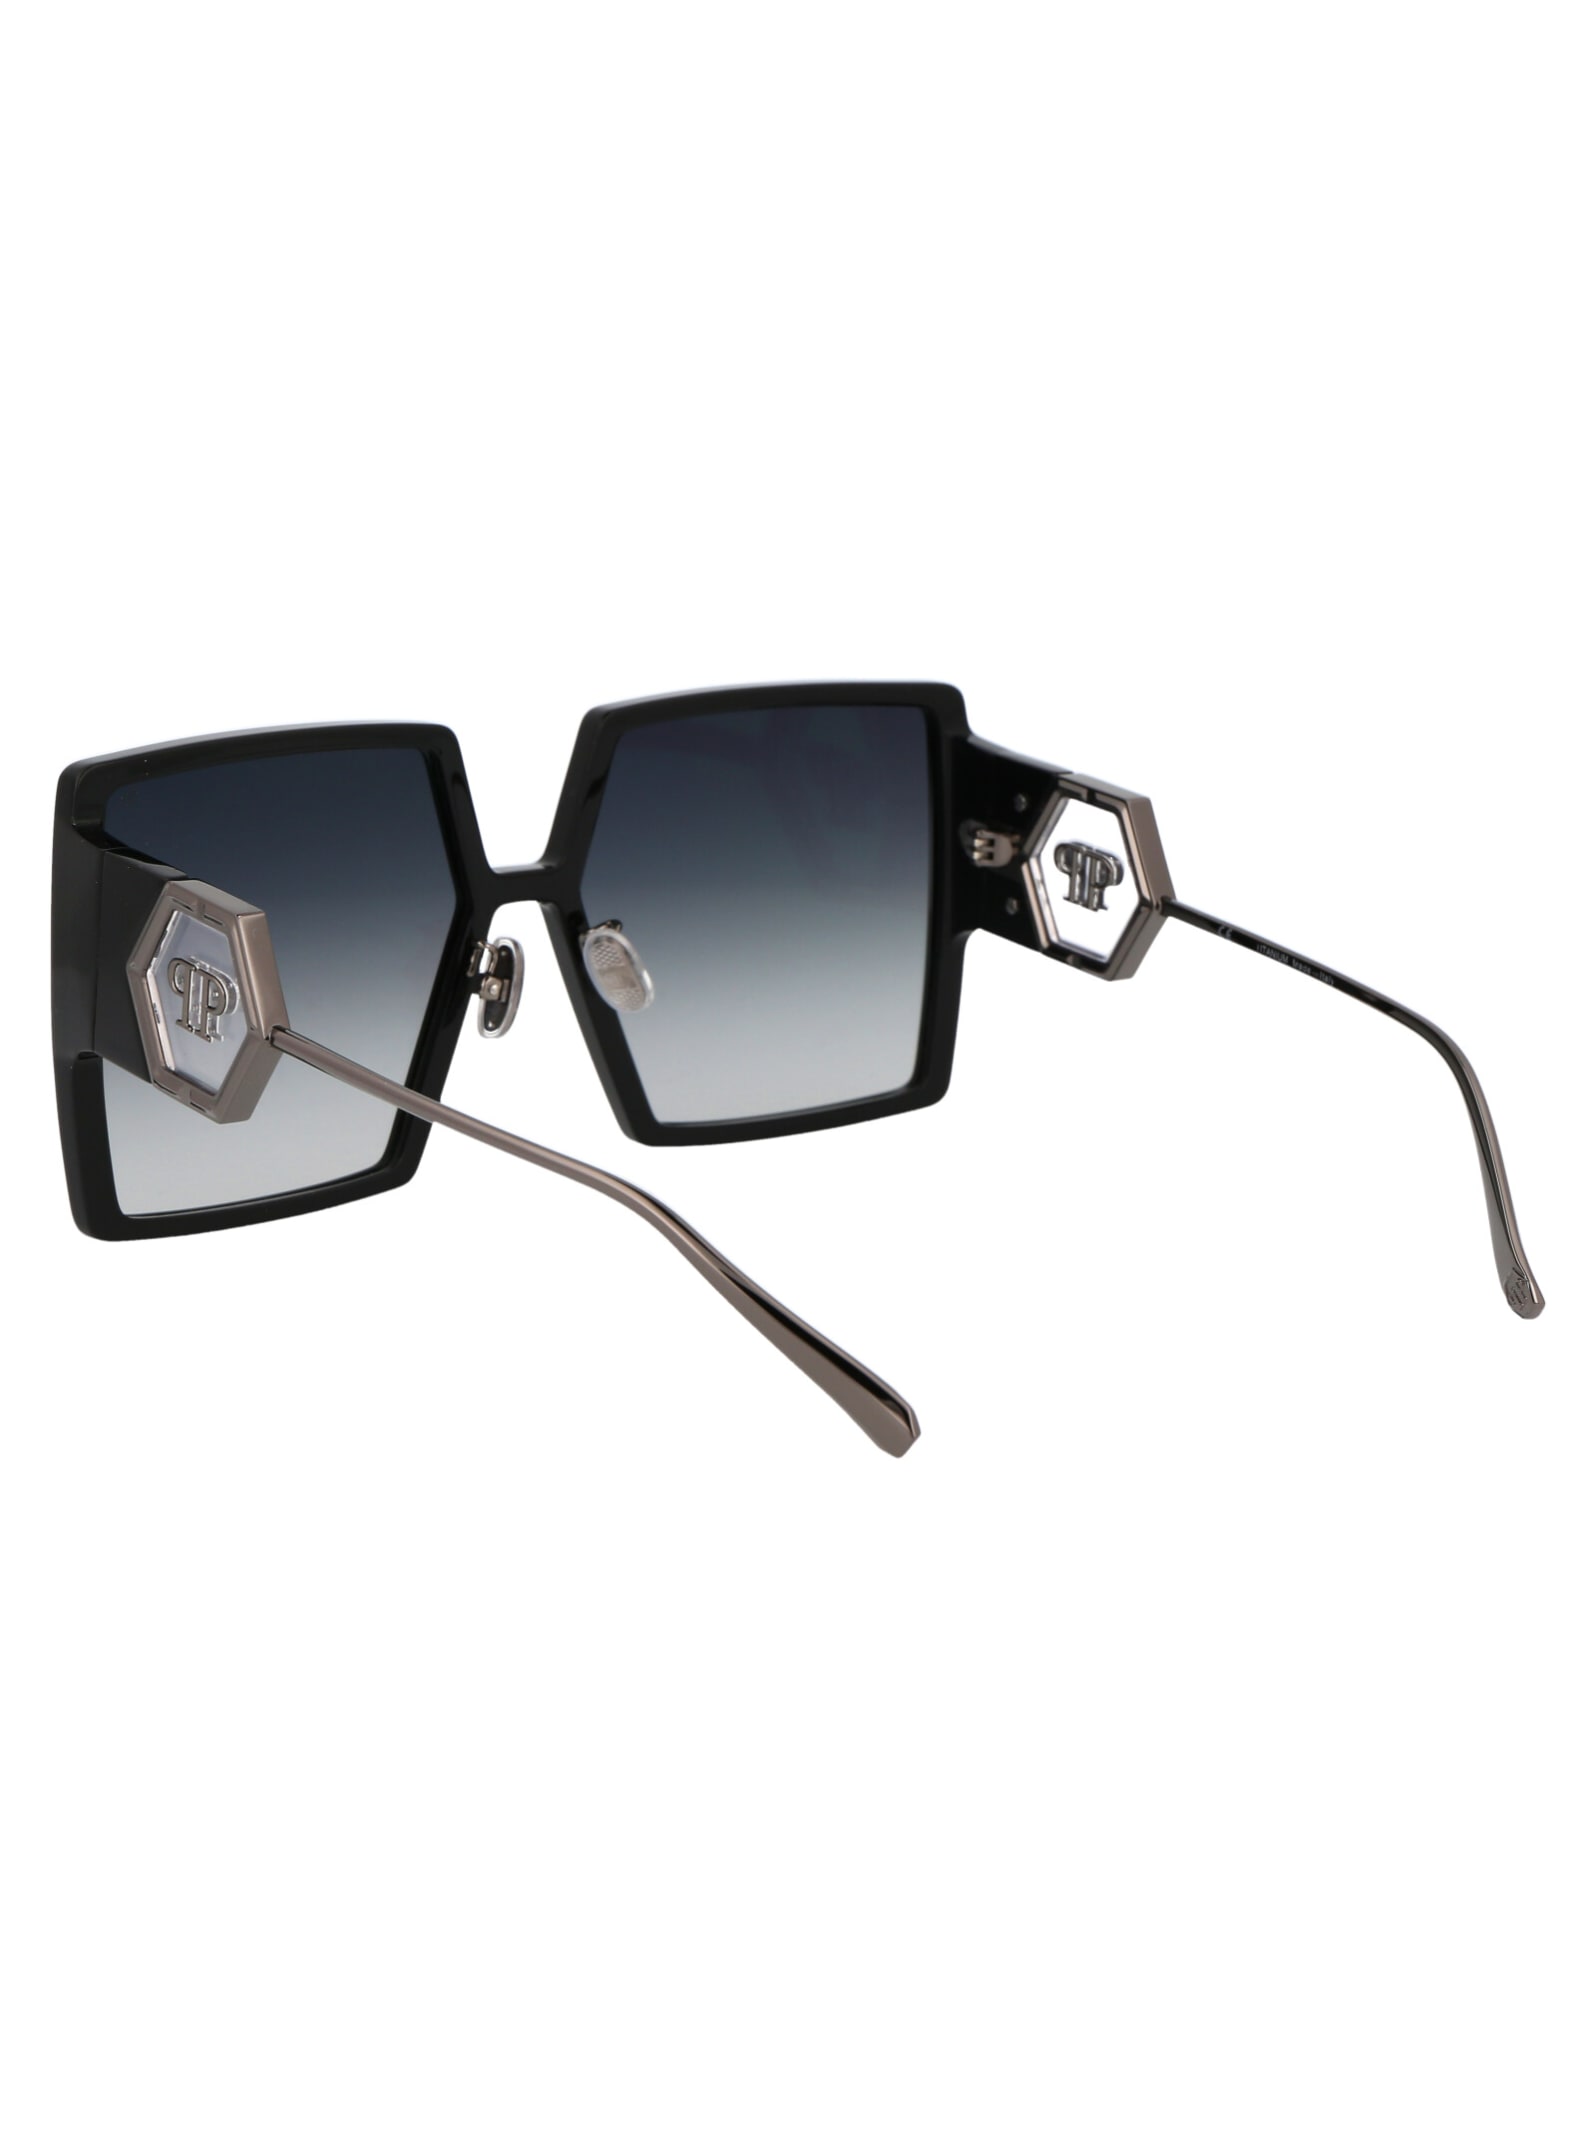 Shop Philipp Plein Spp028m Sunglasses In 0700 Black